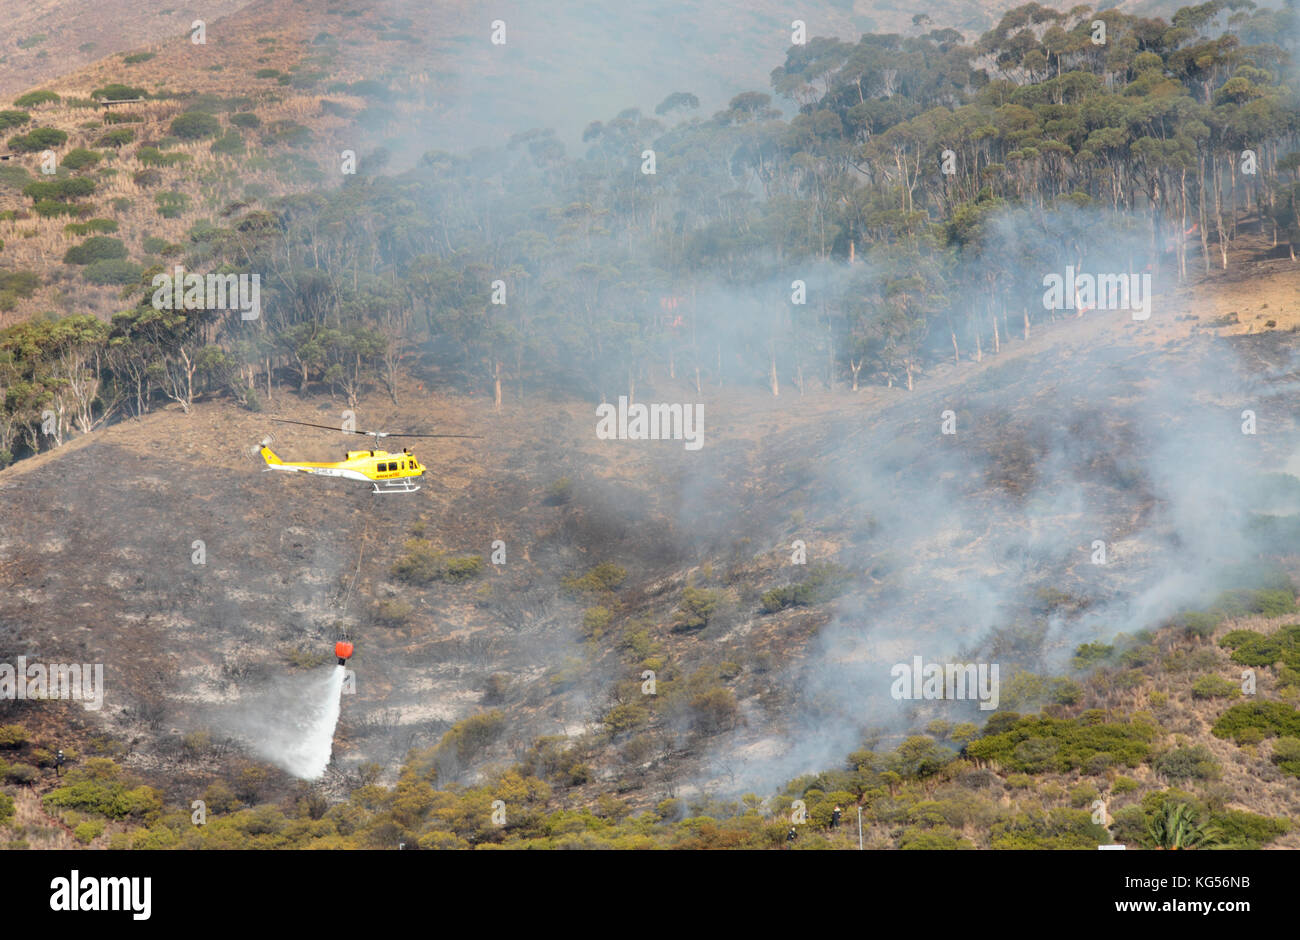 Helicóptero lanzando agua sobre el fuego salvaje, Signal Hill, Ciudad del Cabo, Sudáfrica. Foto de stock